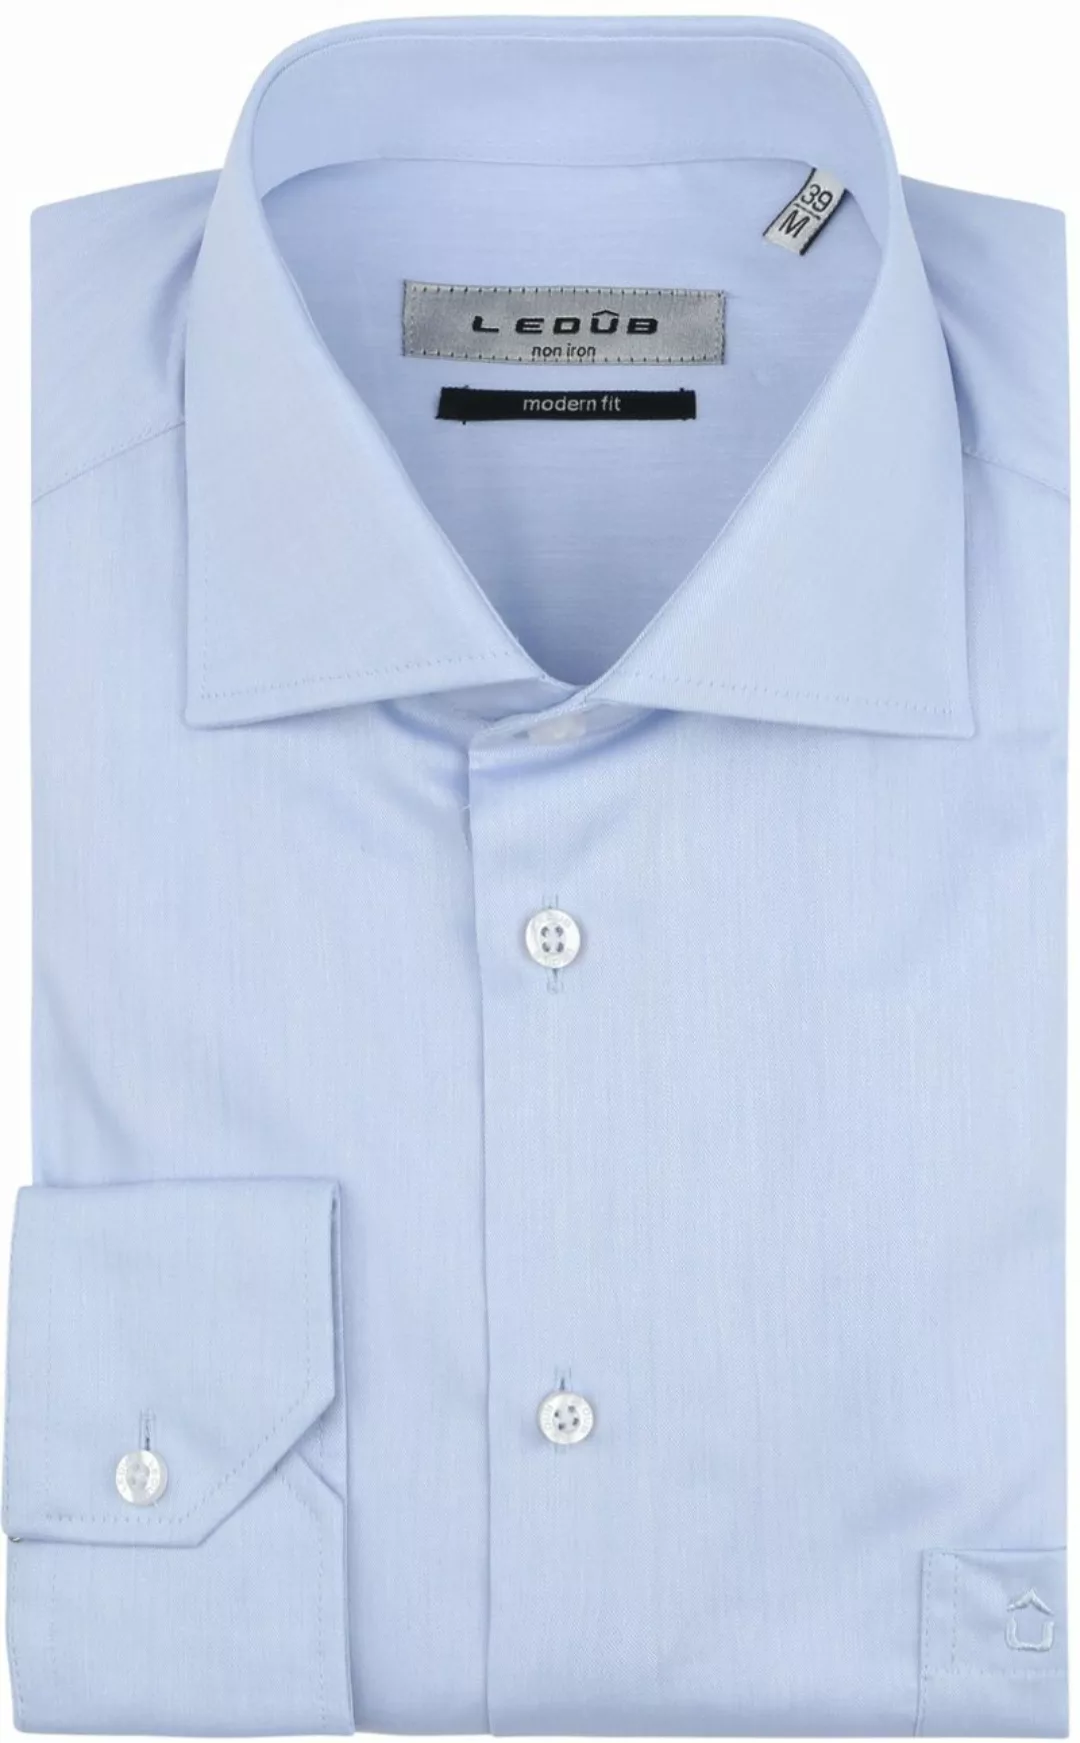 Ledub Hemd Hellblau Brusttassche Extra Long Sleeves - Größe 42 günstig online kaufen